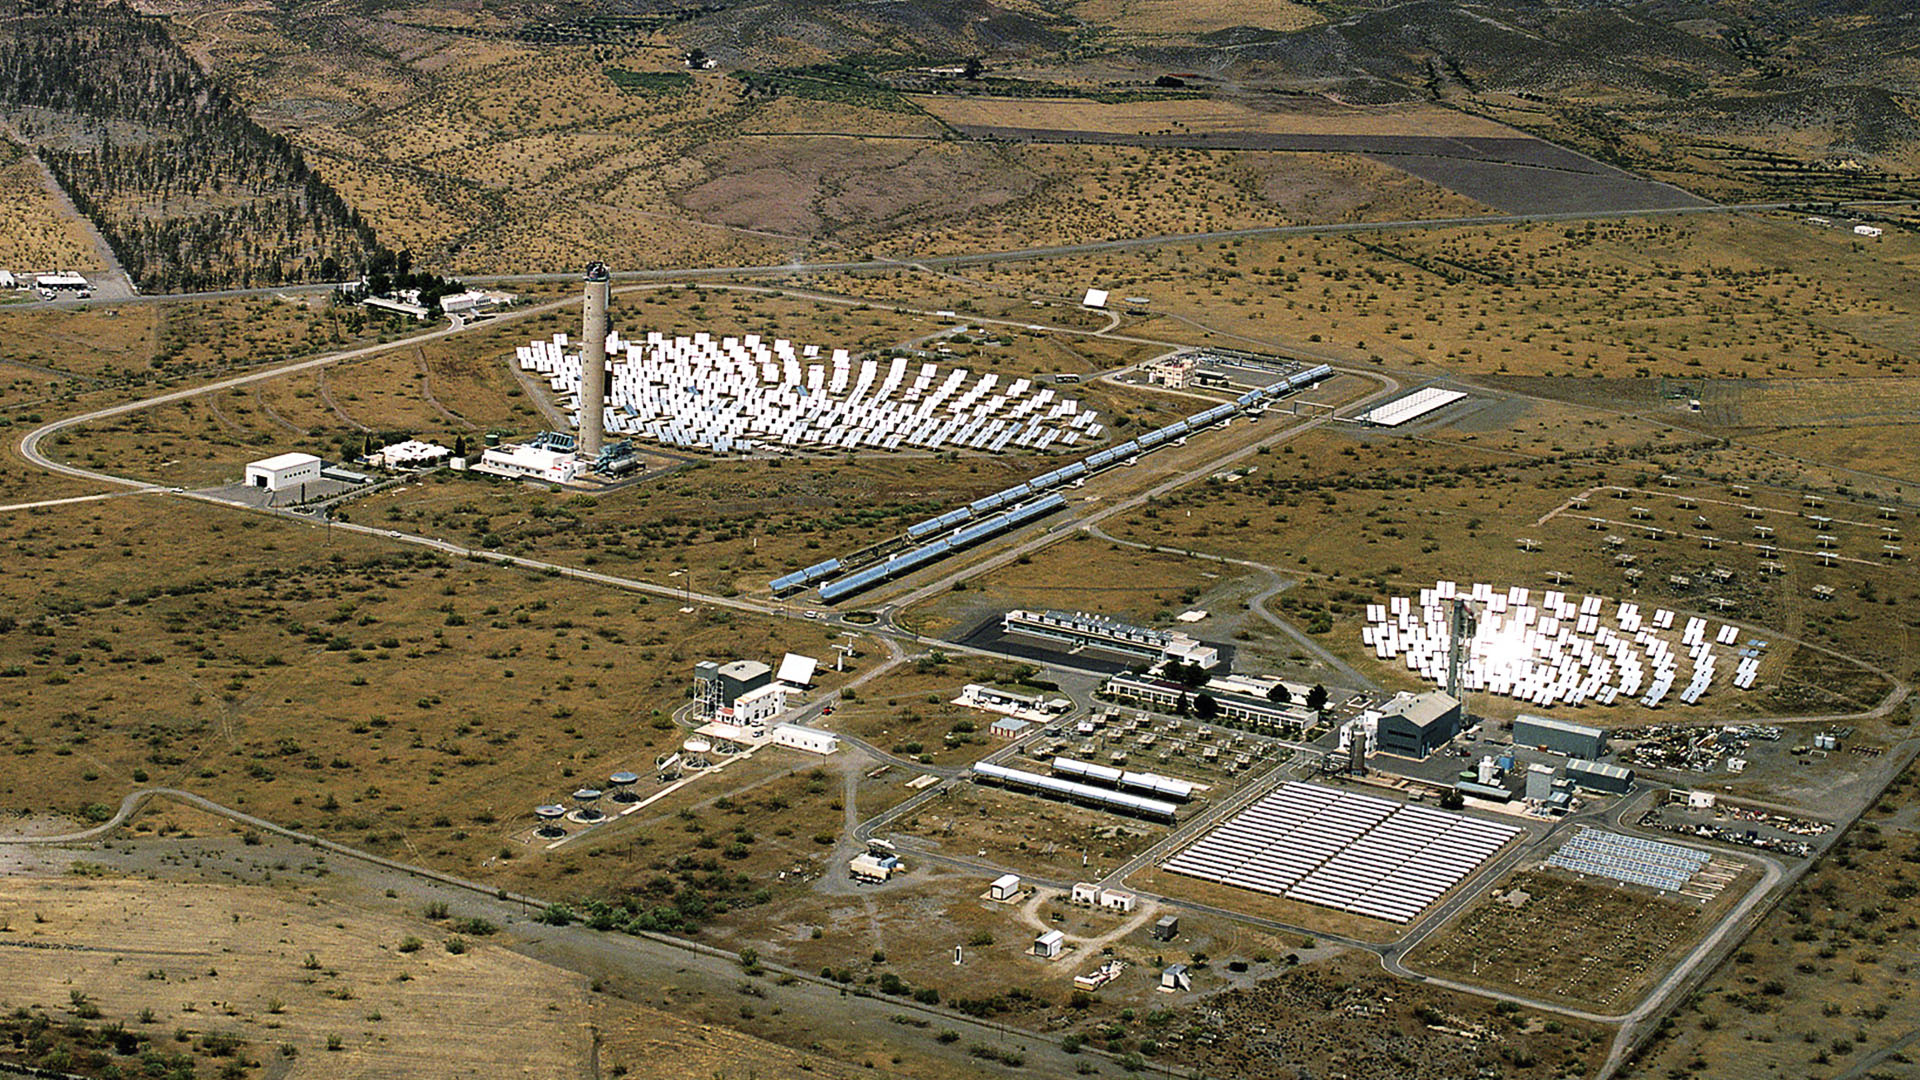 Plataforma Solar Almería – von der Internationalen Energieagentur 1973 als Reaktion auf die Ölkrise 1973 gegründet. Internationale Forschungs- und Versuchsanstalt. (© CIEMAT)